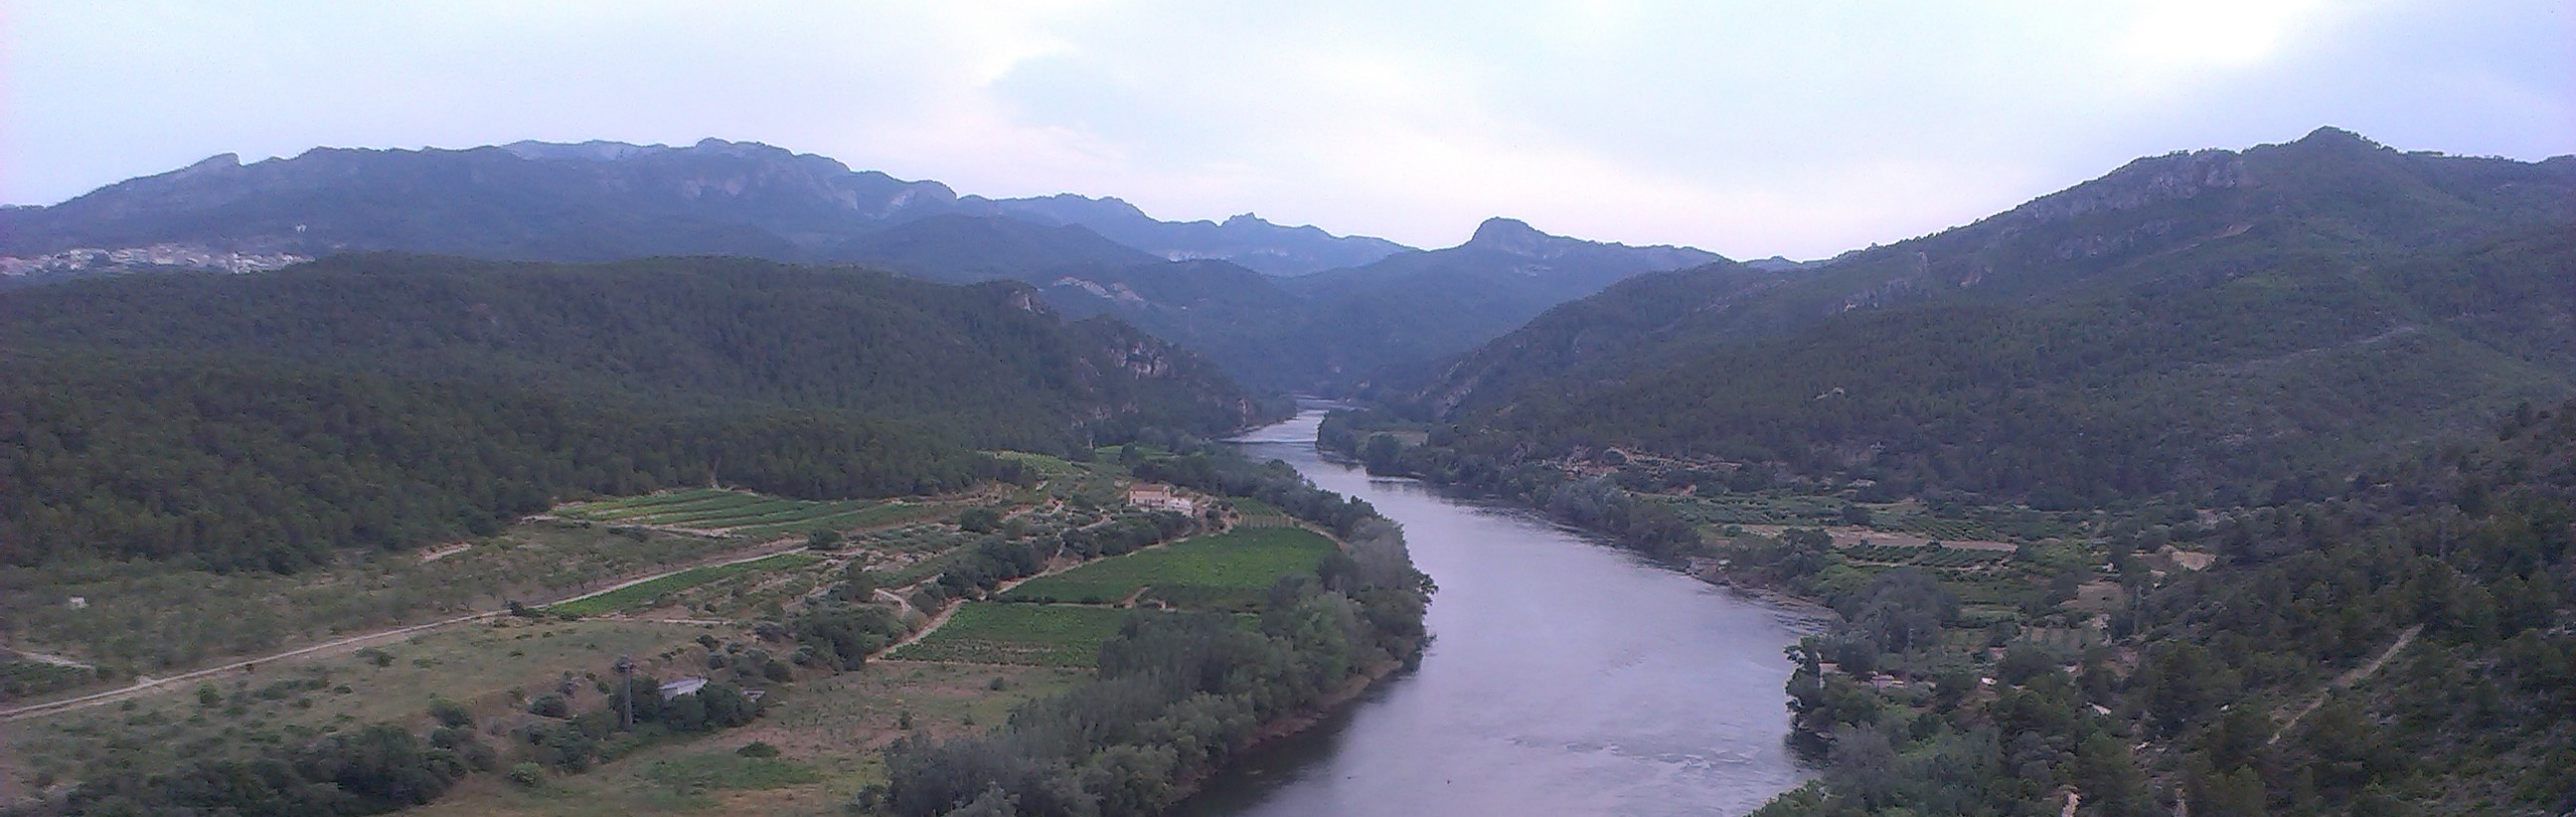 La CHE adjudica el mantenimiento de las infraestructuras hidráulicas de la zona regable del Canal de Bardenas, en Navarra y Aragón